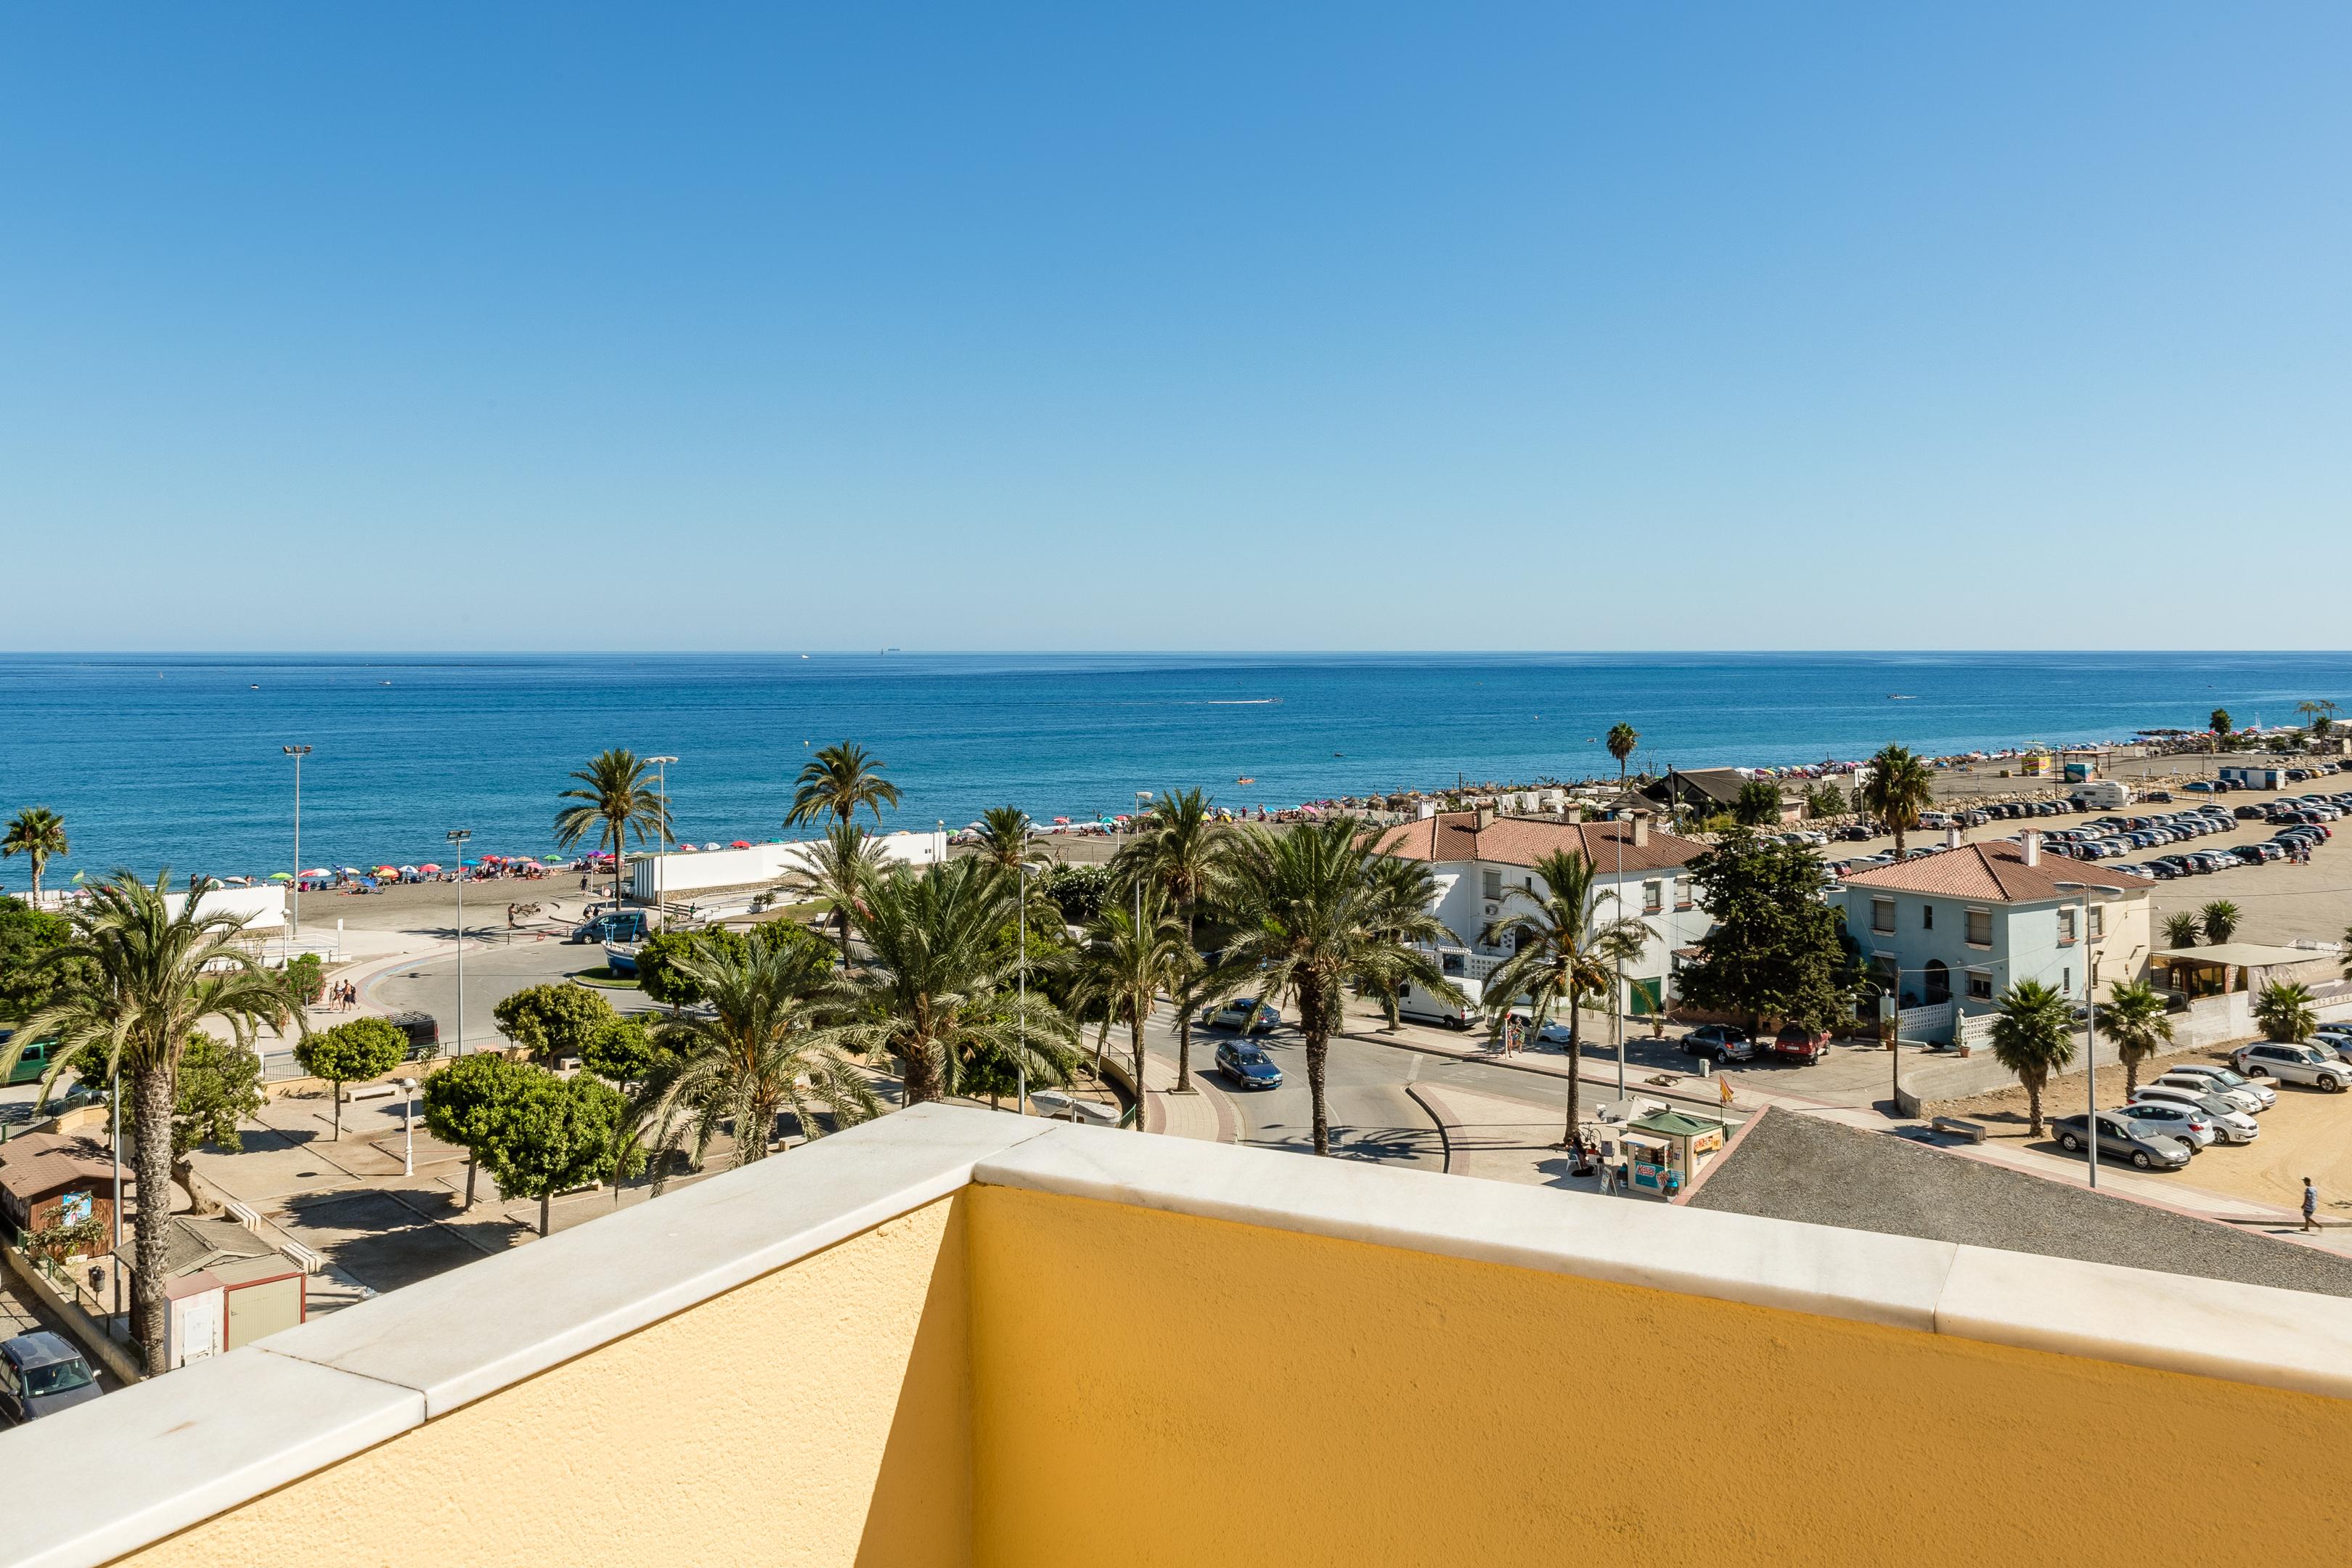 BQ Andalucia Beach Hotel Torre Del Mar Exterior foto